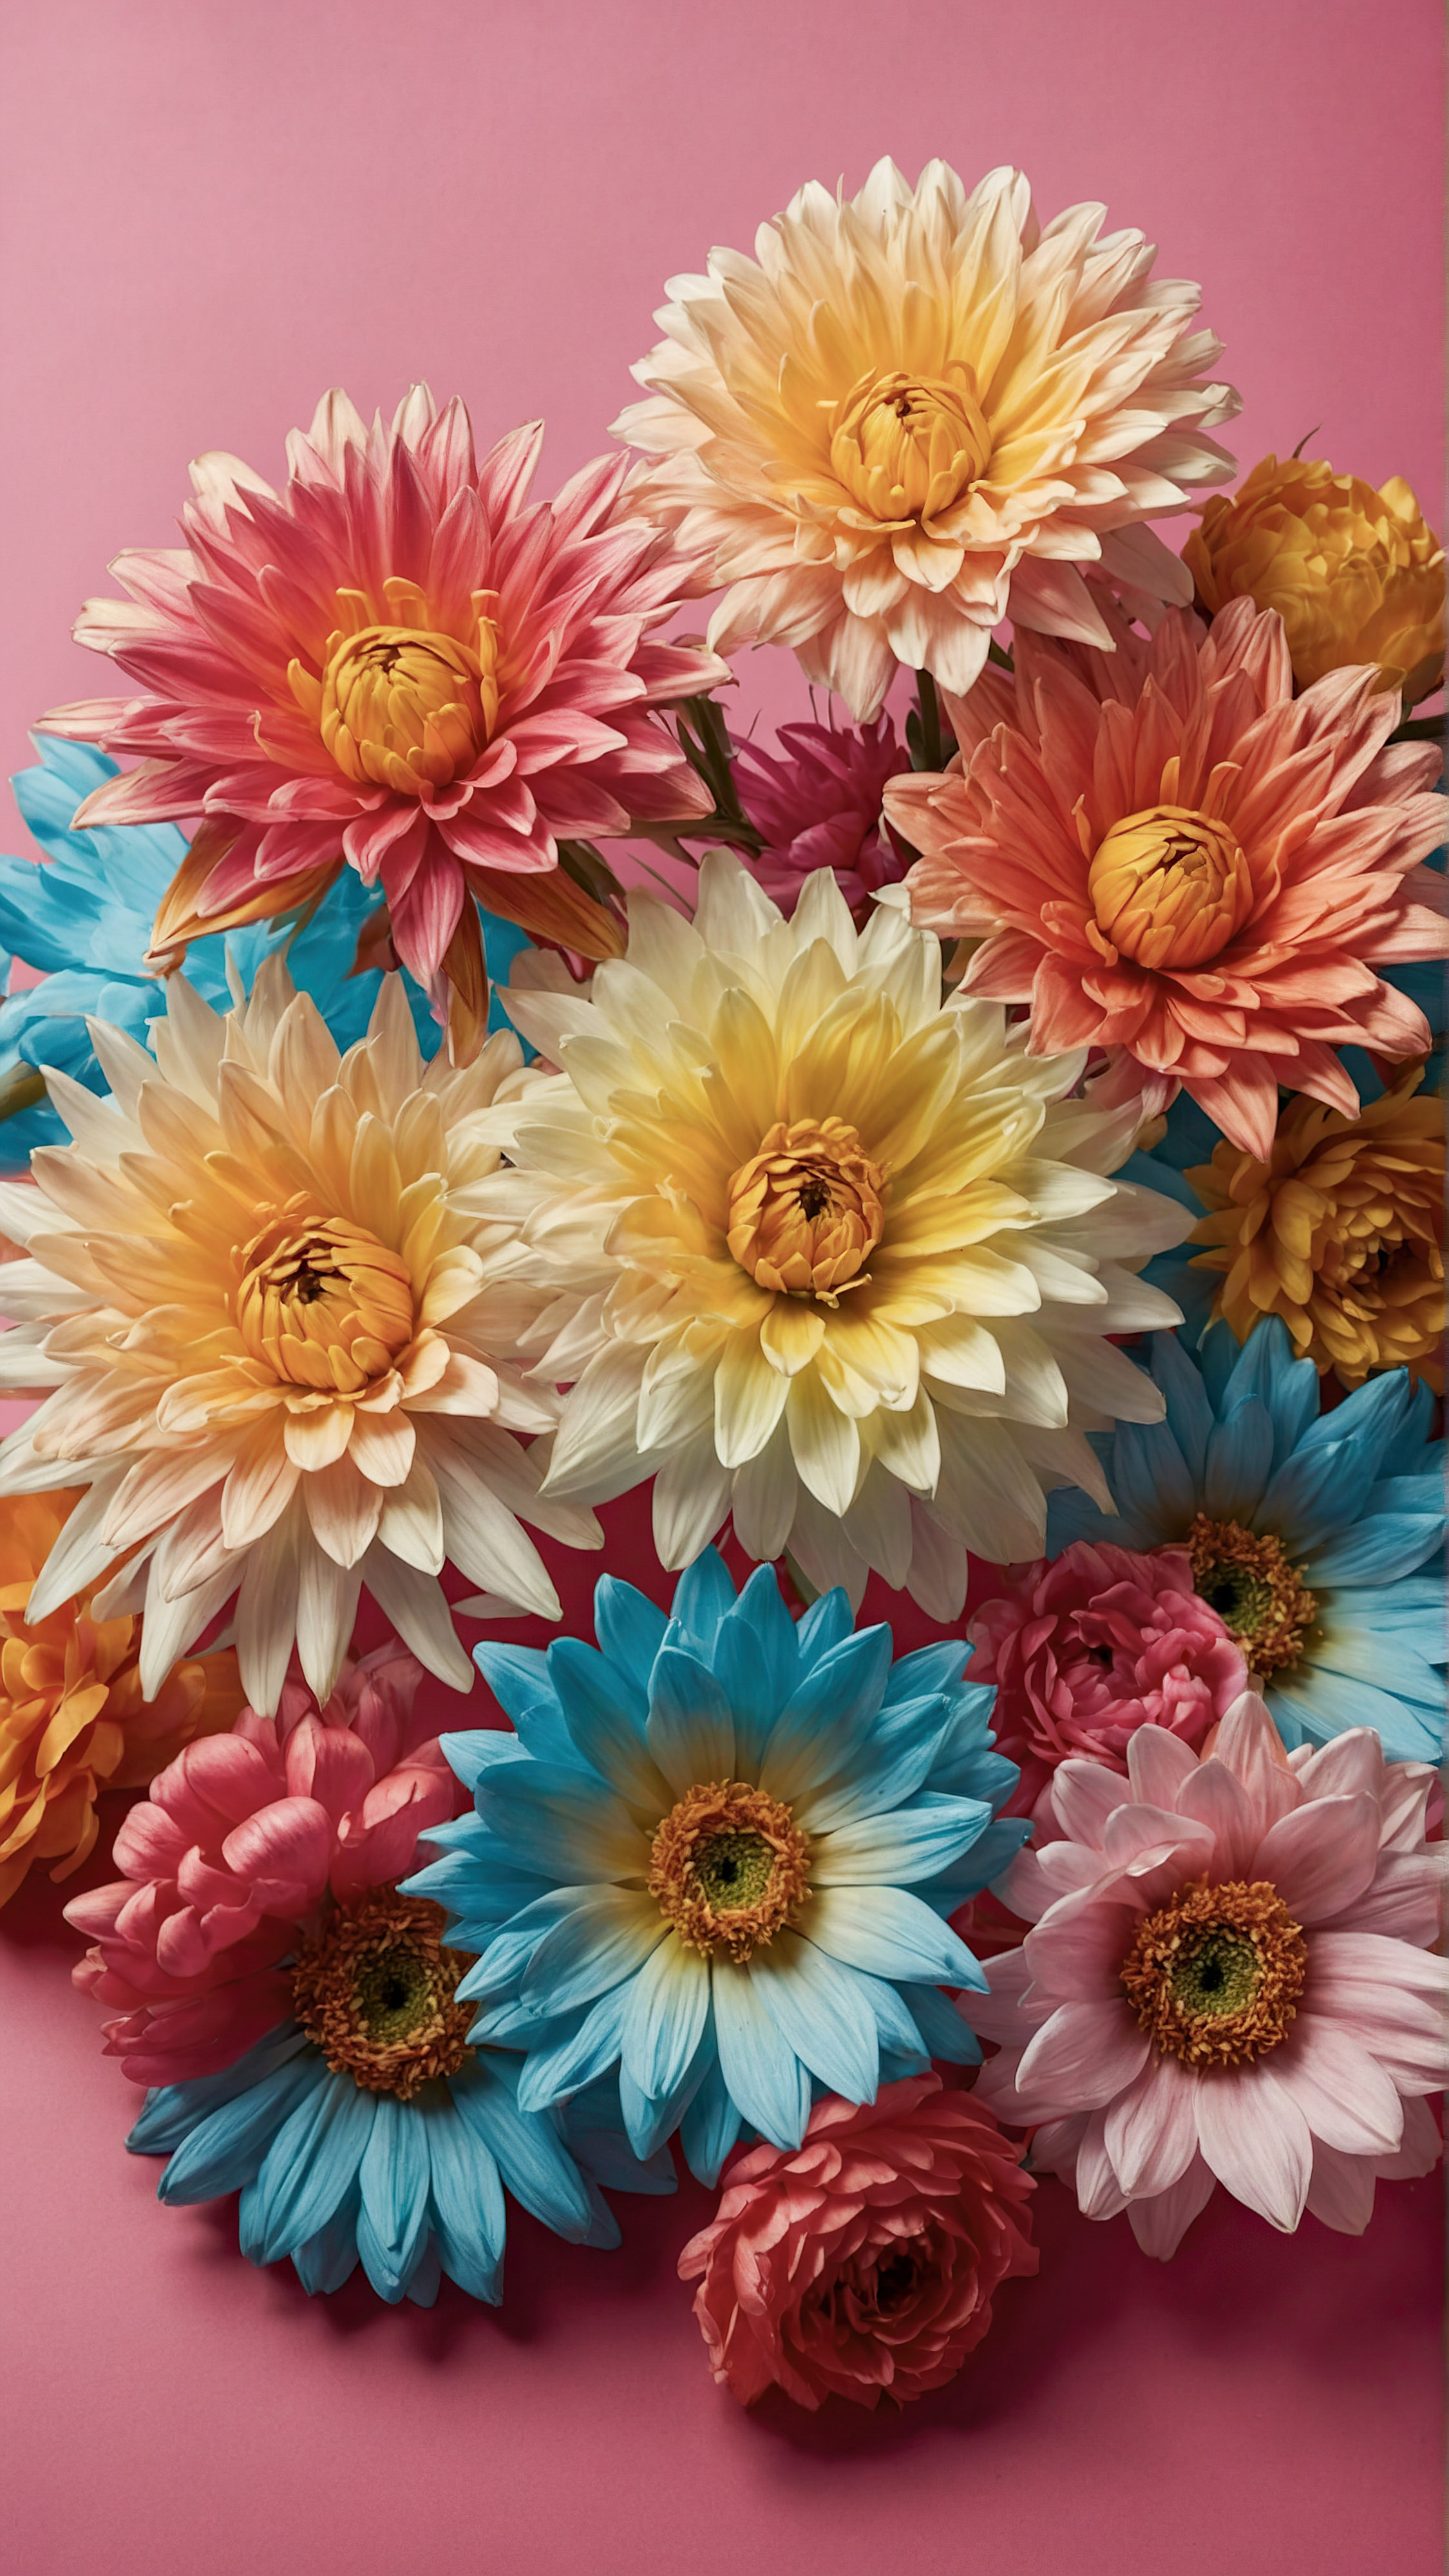 Profitez de la beauté et du style de notre beau fond d'écran pour iPhone, présentant une collection de fleurs artificielles vibrantes avec des pétales et des centres détaillés, sur un arrière-plan rose contrastant.